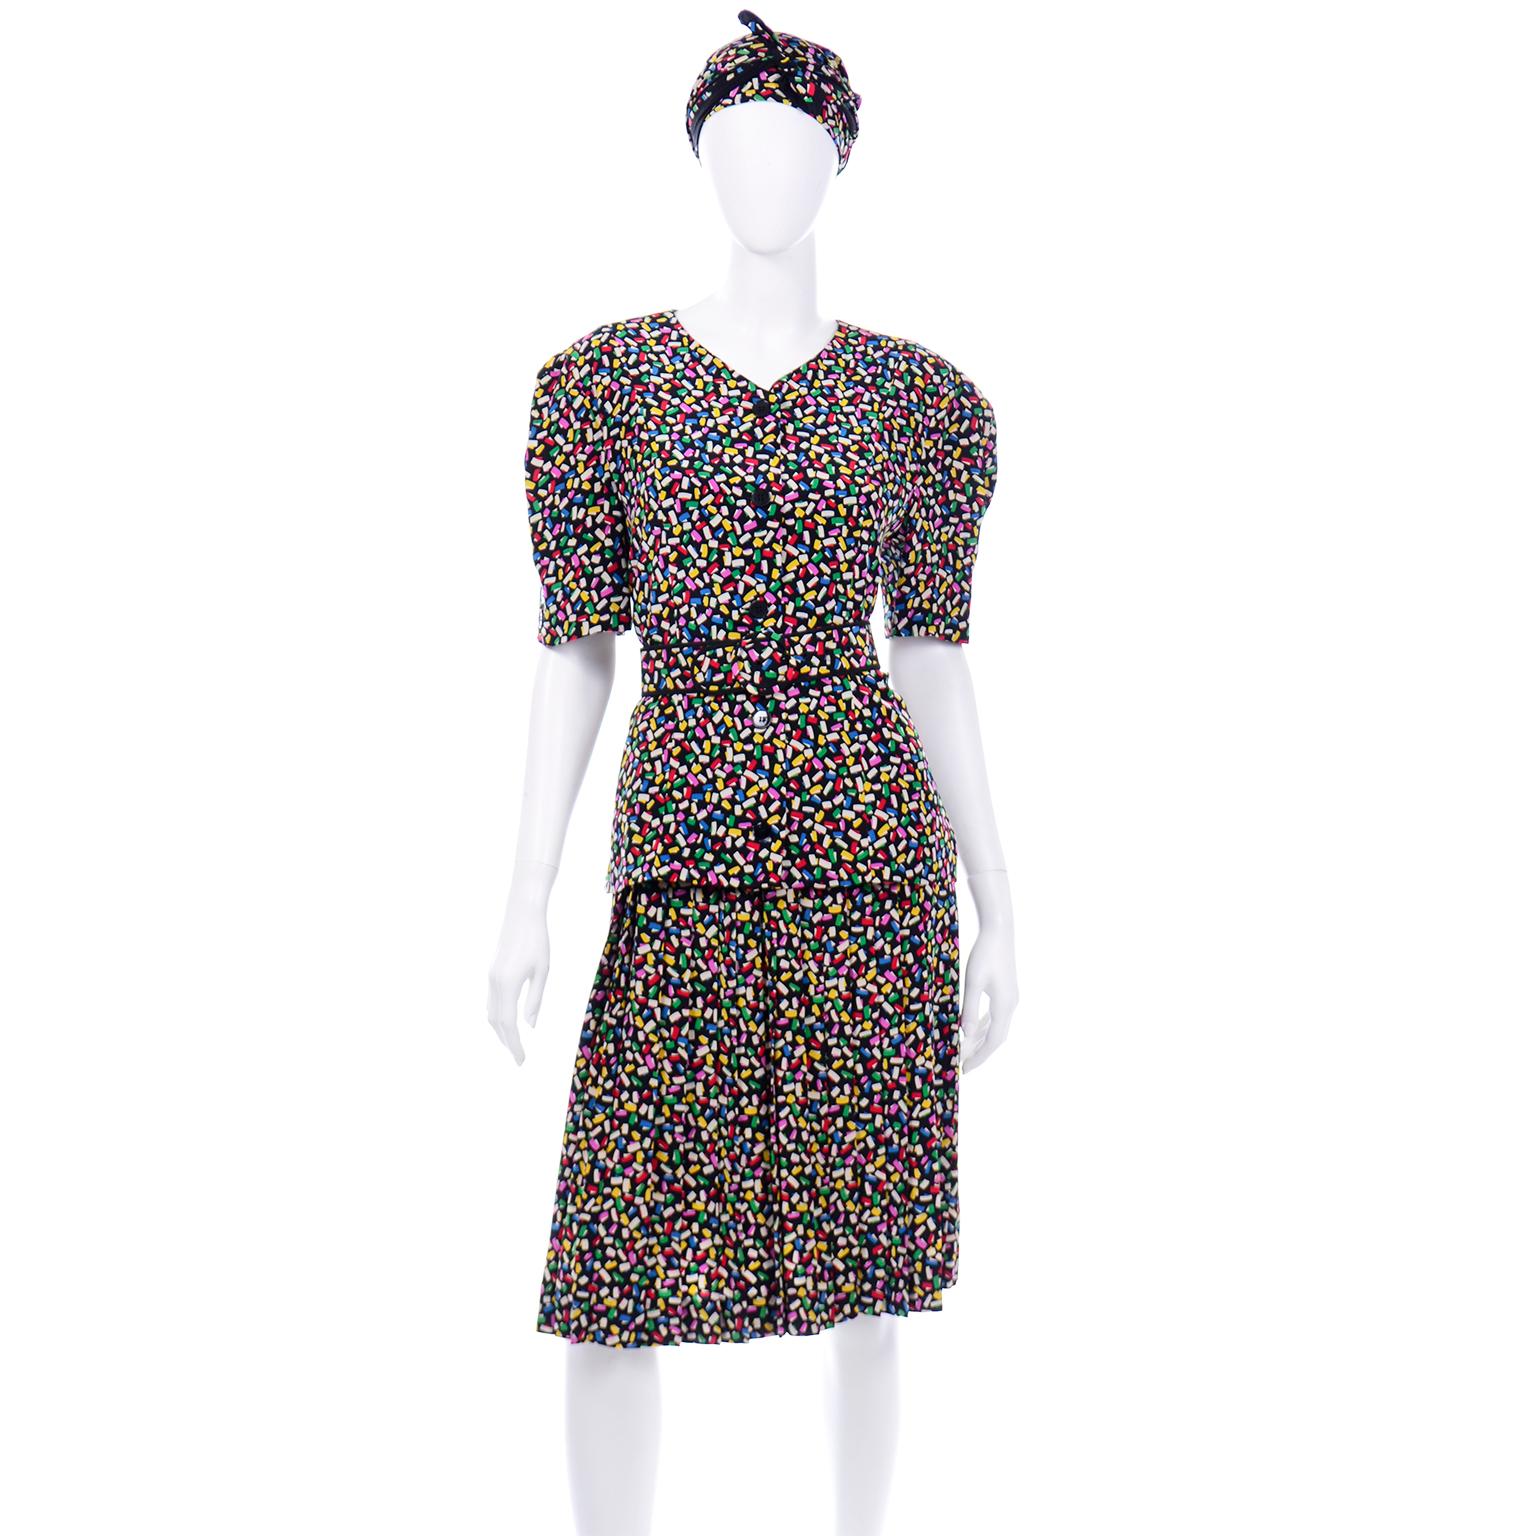 Voici une robe vintage en soie 2 pièces très ludique d'Albert Nipon, avec un imprimé confettis amusant et coloré ! Nous avons toujours aimé Albert Nipon et si vous décidez d'acheter une robe vintage Nipon, vous tomberez instantanément amoureuse de